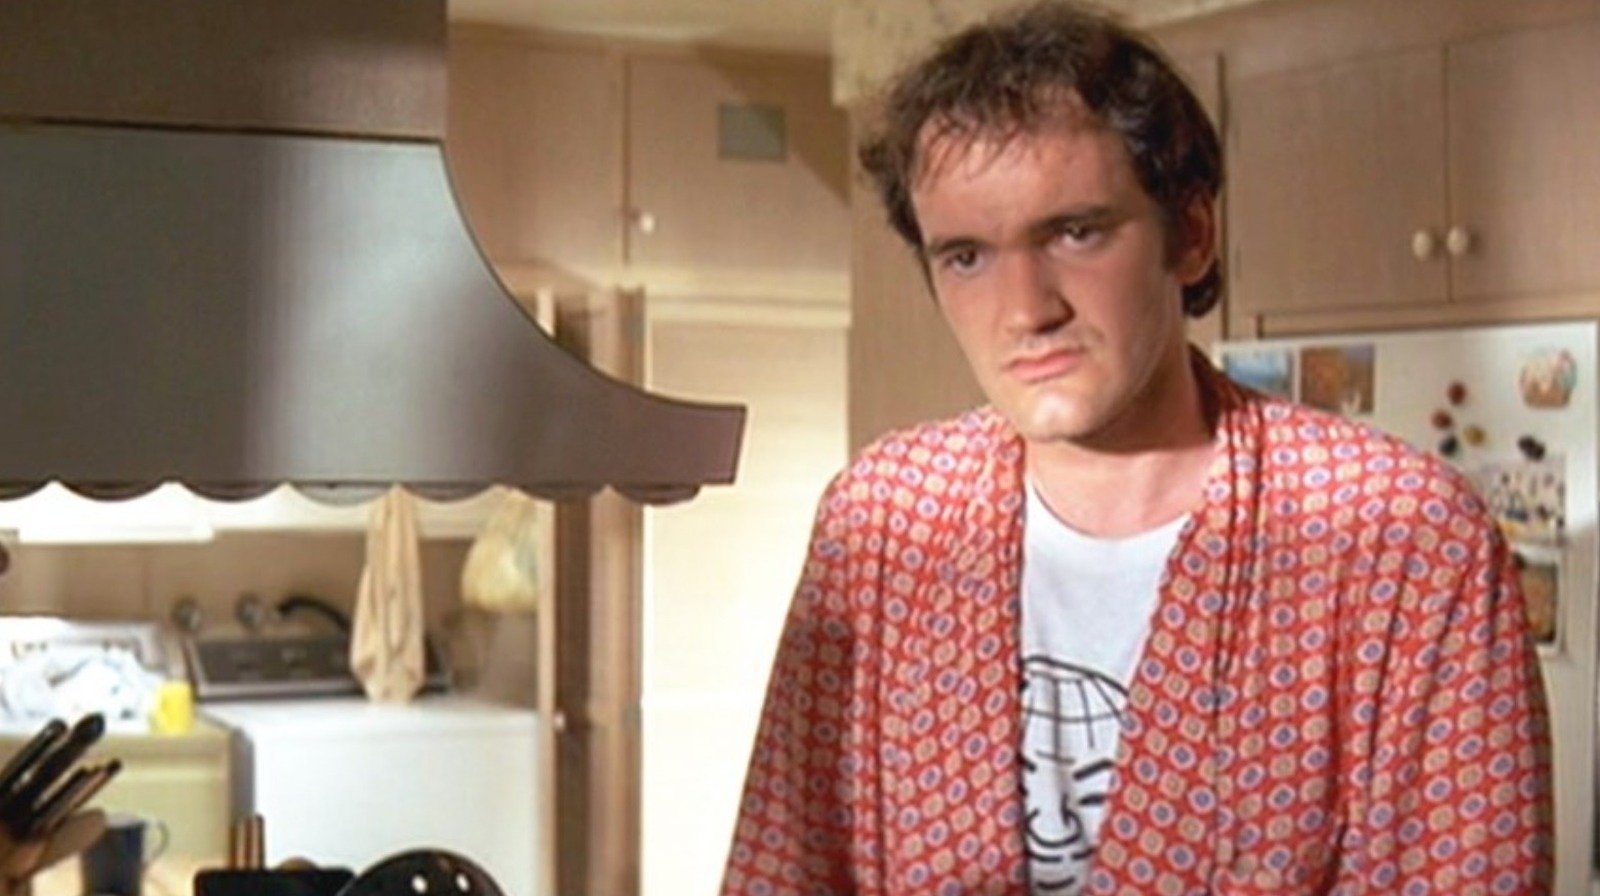 Han är "den sista stora filmstjärnan" enligt Quentin Tarantino